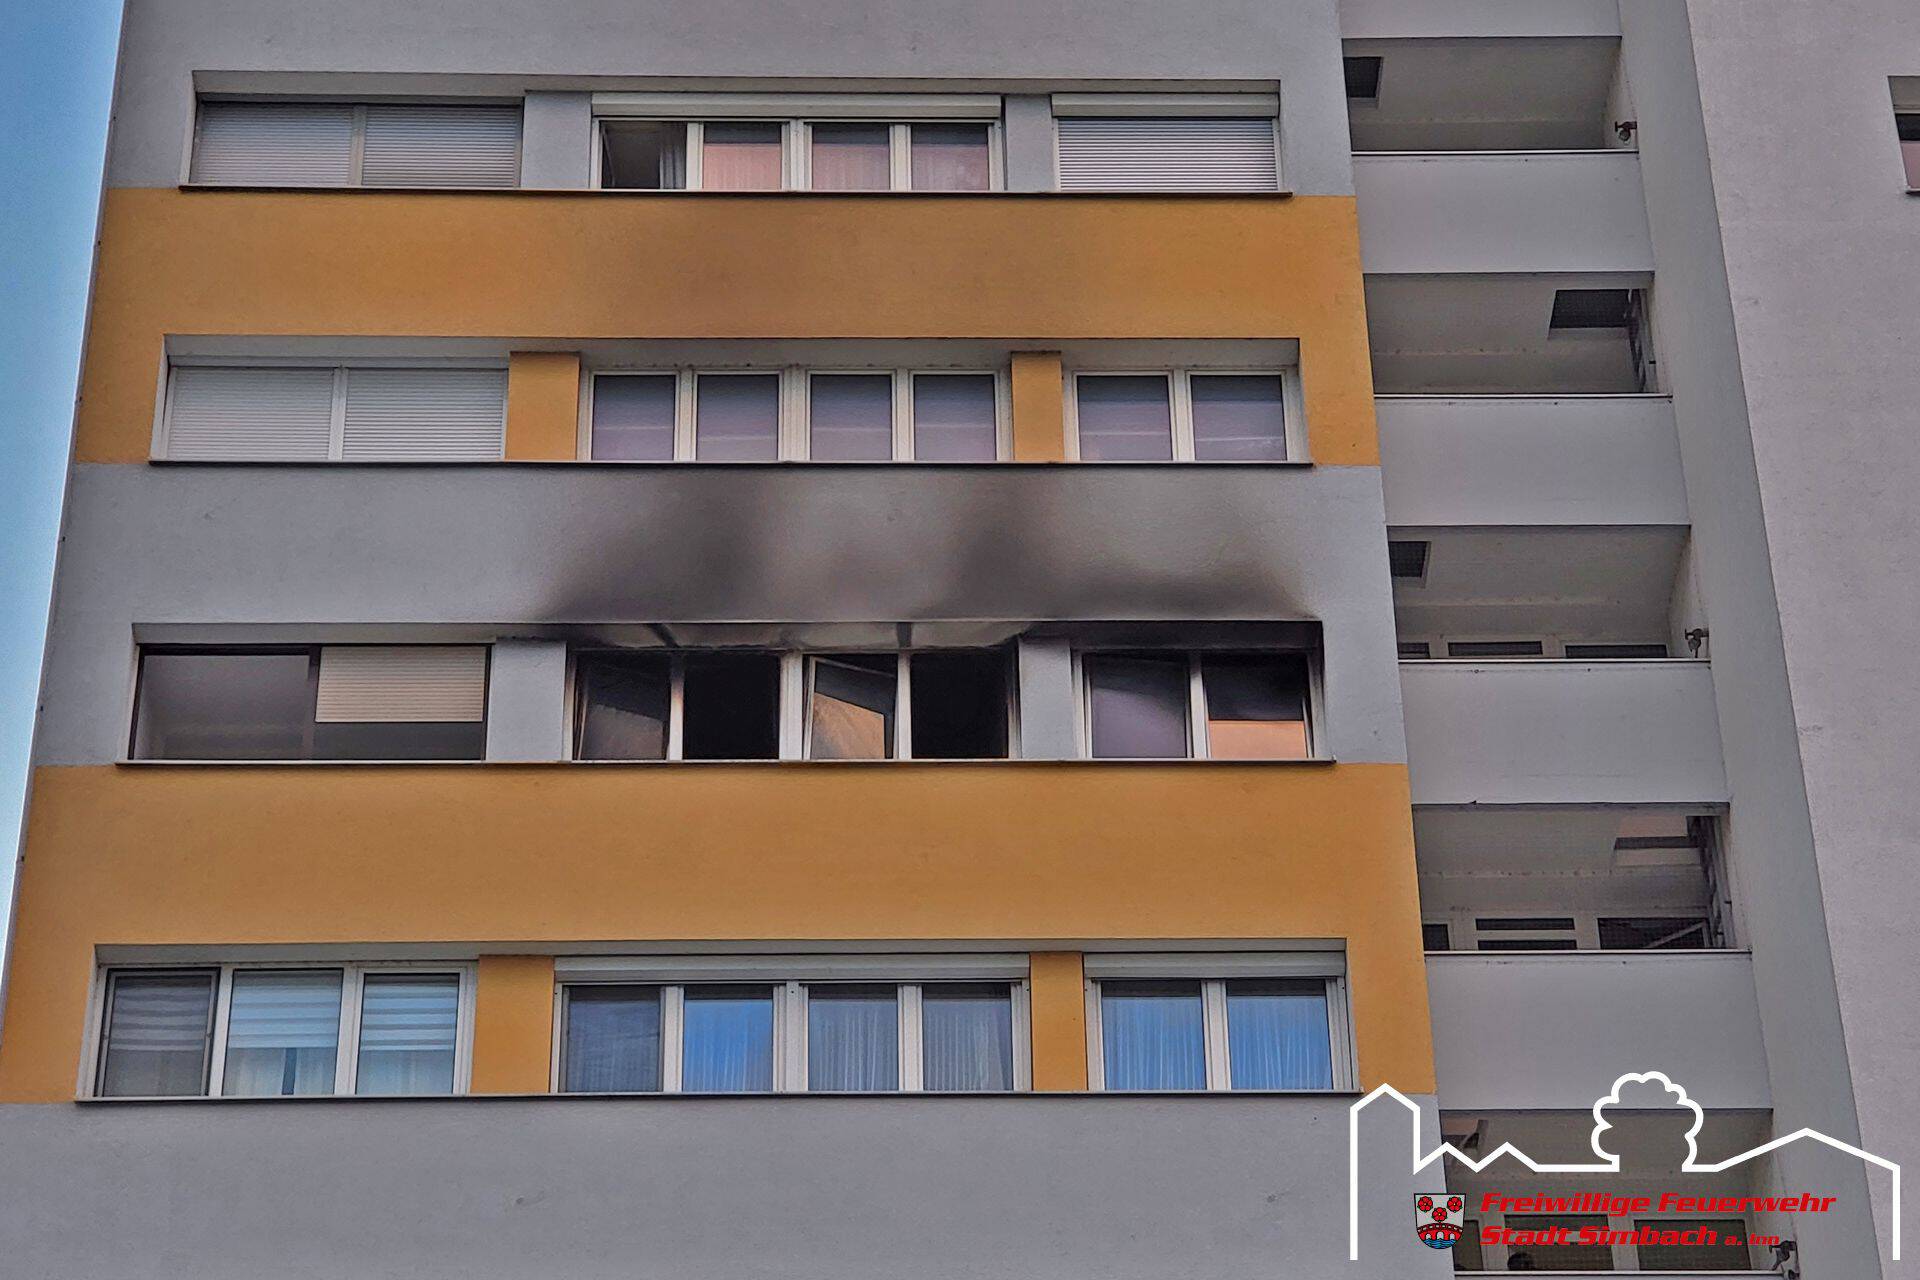 2022.07.03 Wohnungsbrand in Hochhaus (16)